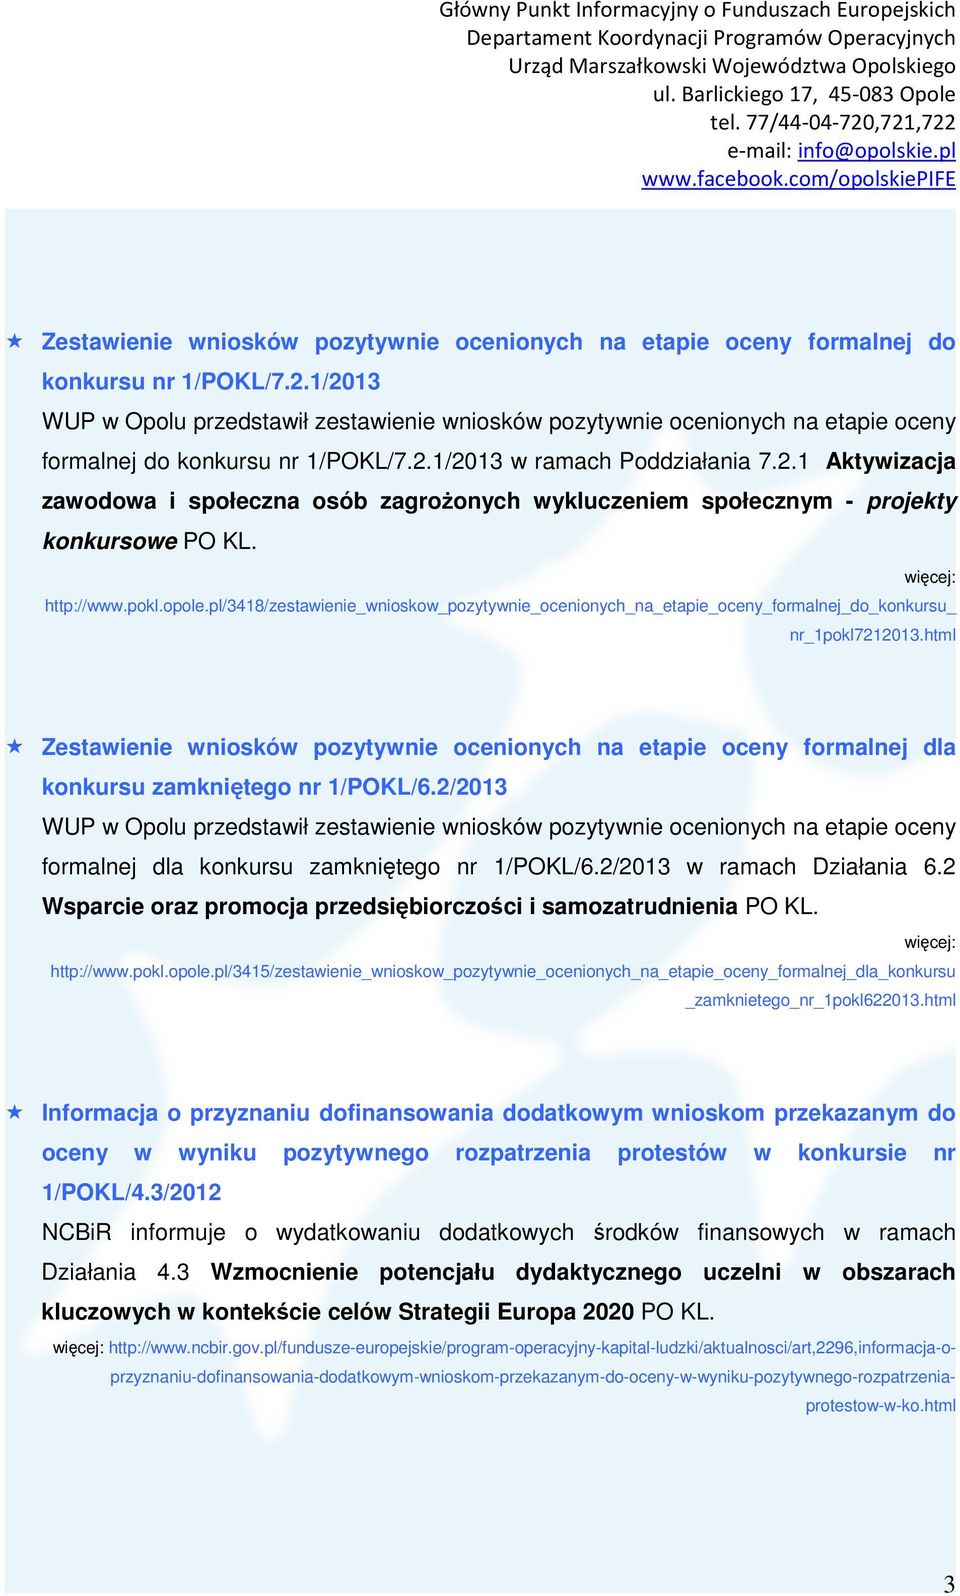 http://www.pokl.opole.pl/3418/zestawienie_wnioskow_pozytywnie_ocenionych_na_etapie_oceny_formalnej_do_konkursu_ nr_1pokl7212013.